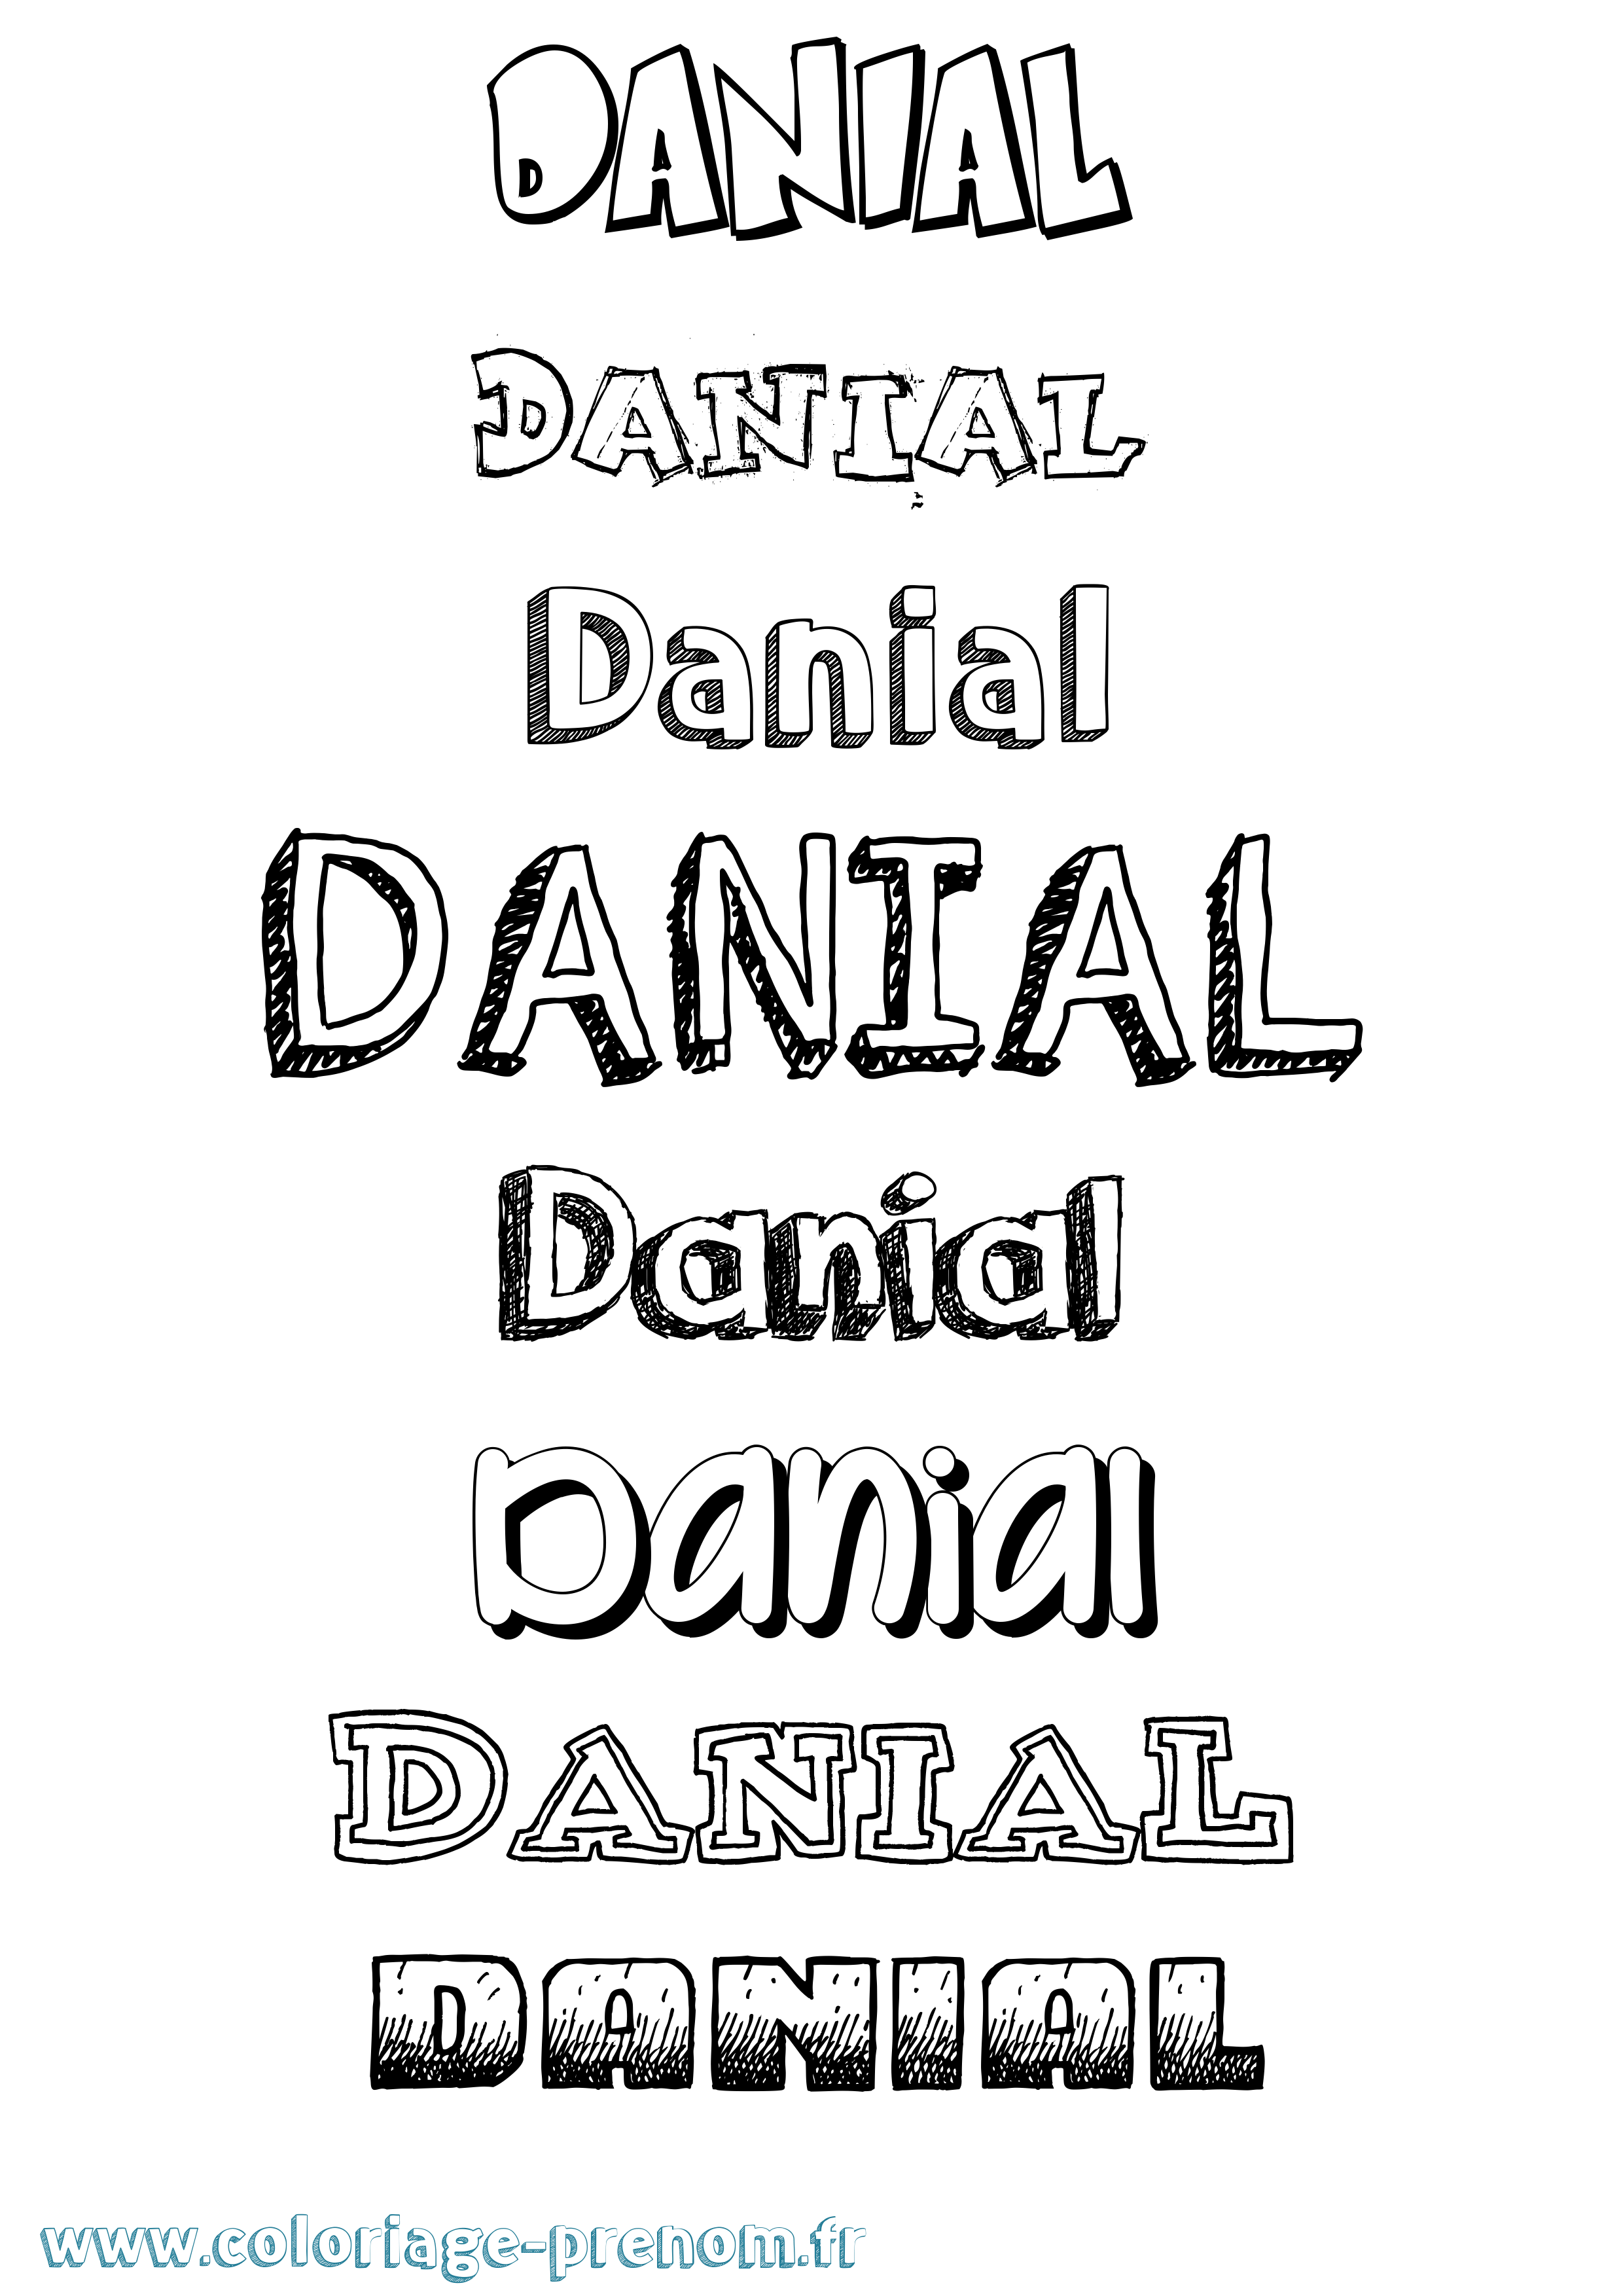 Coloriage prénom Danial Dessiné